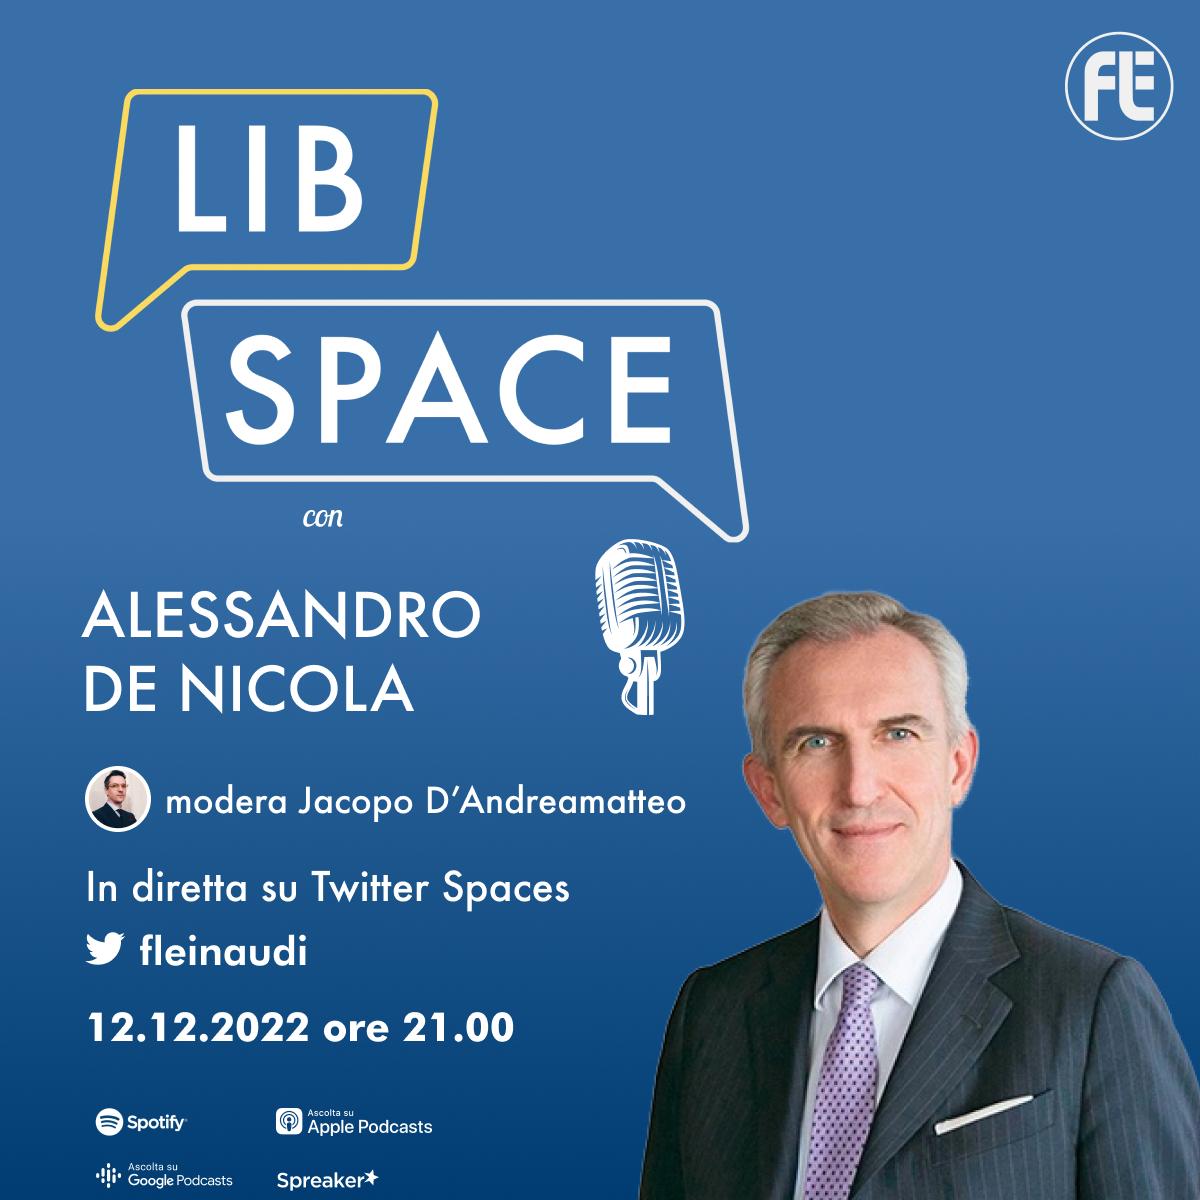 LibSpace con Alessandro De Nicola